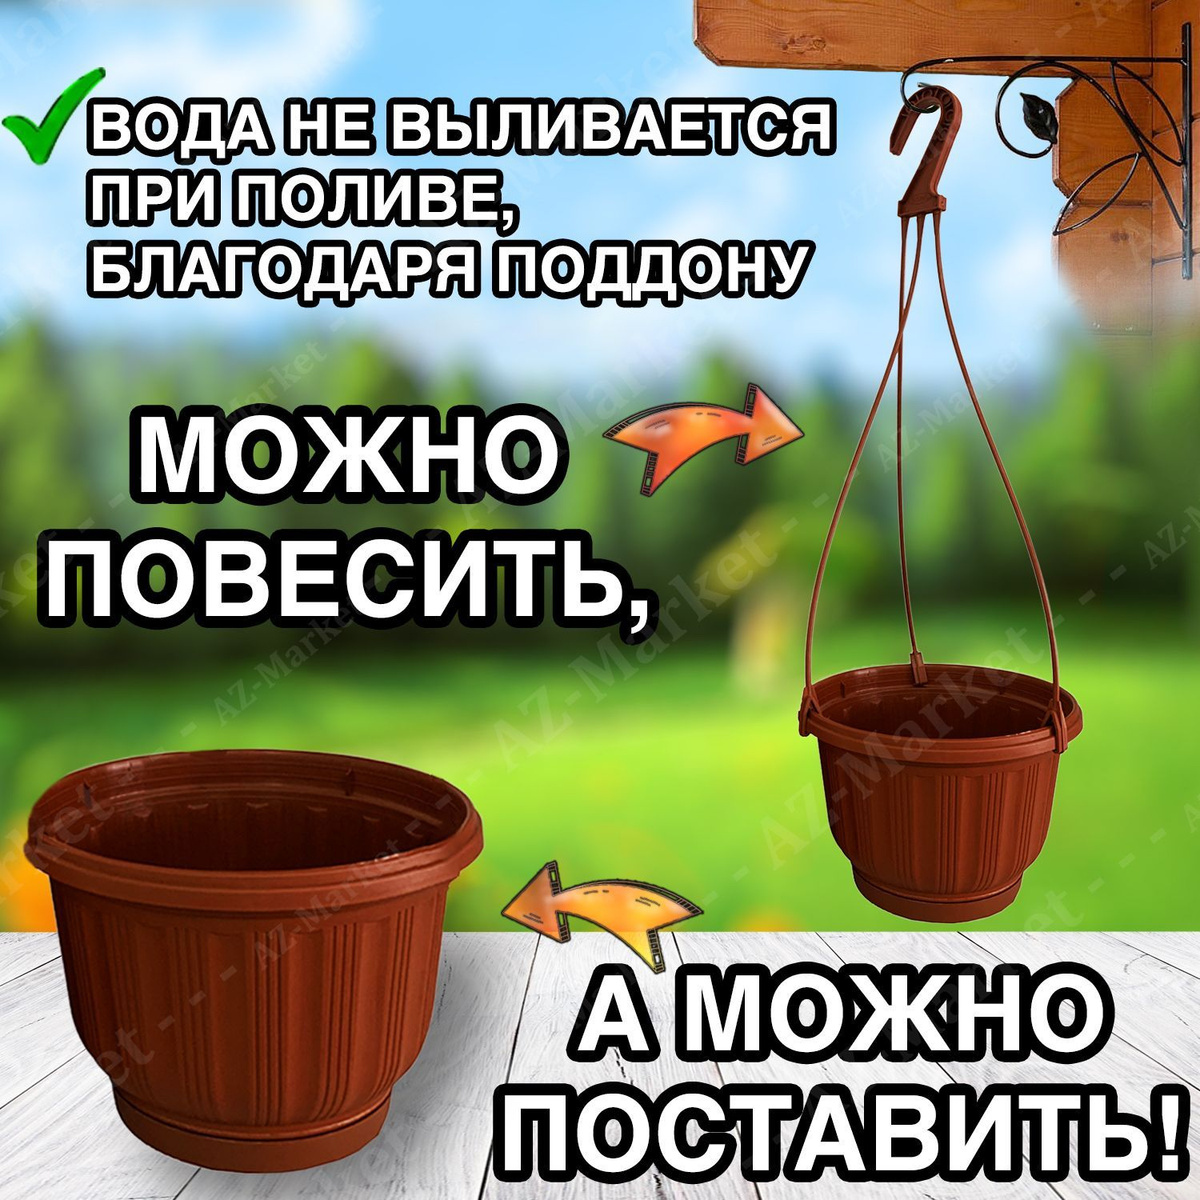 Кашпо подвесное с поддоном 2,4л уличное для цветов и растений, садовый набор 10шт Терракотовый (коричневый)